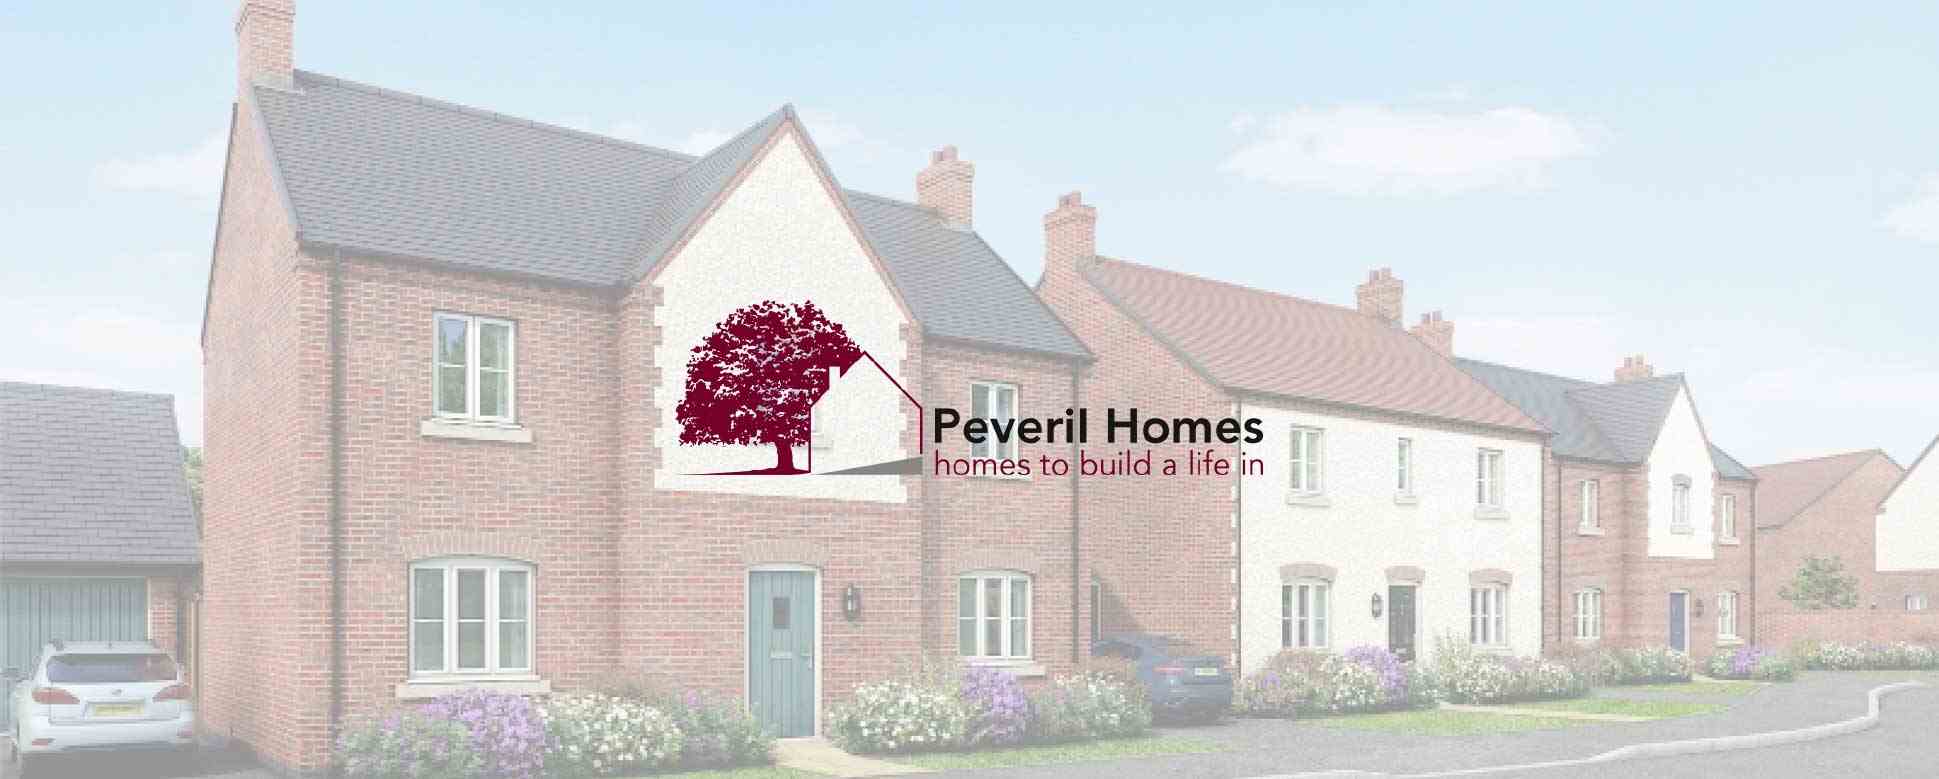 Meet the Developer – Peveril Homes